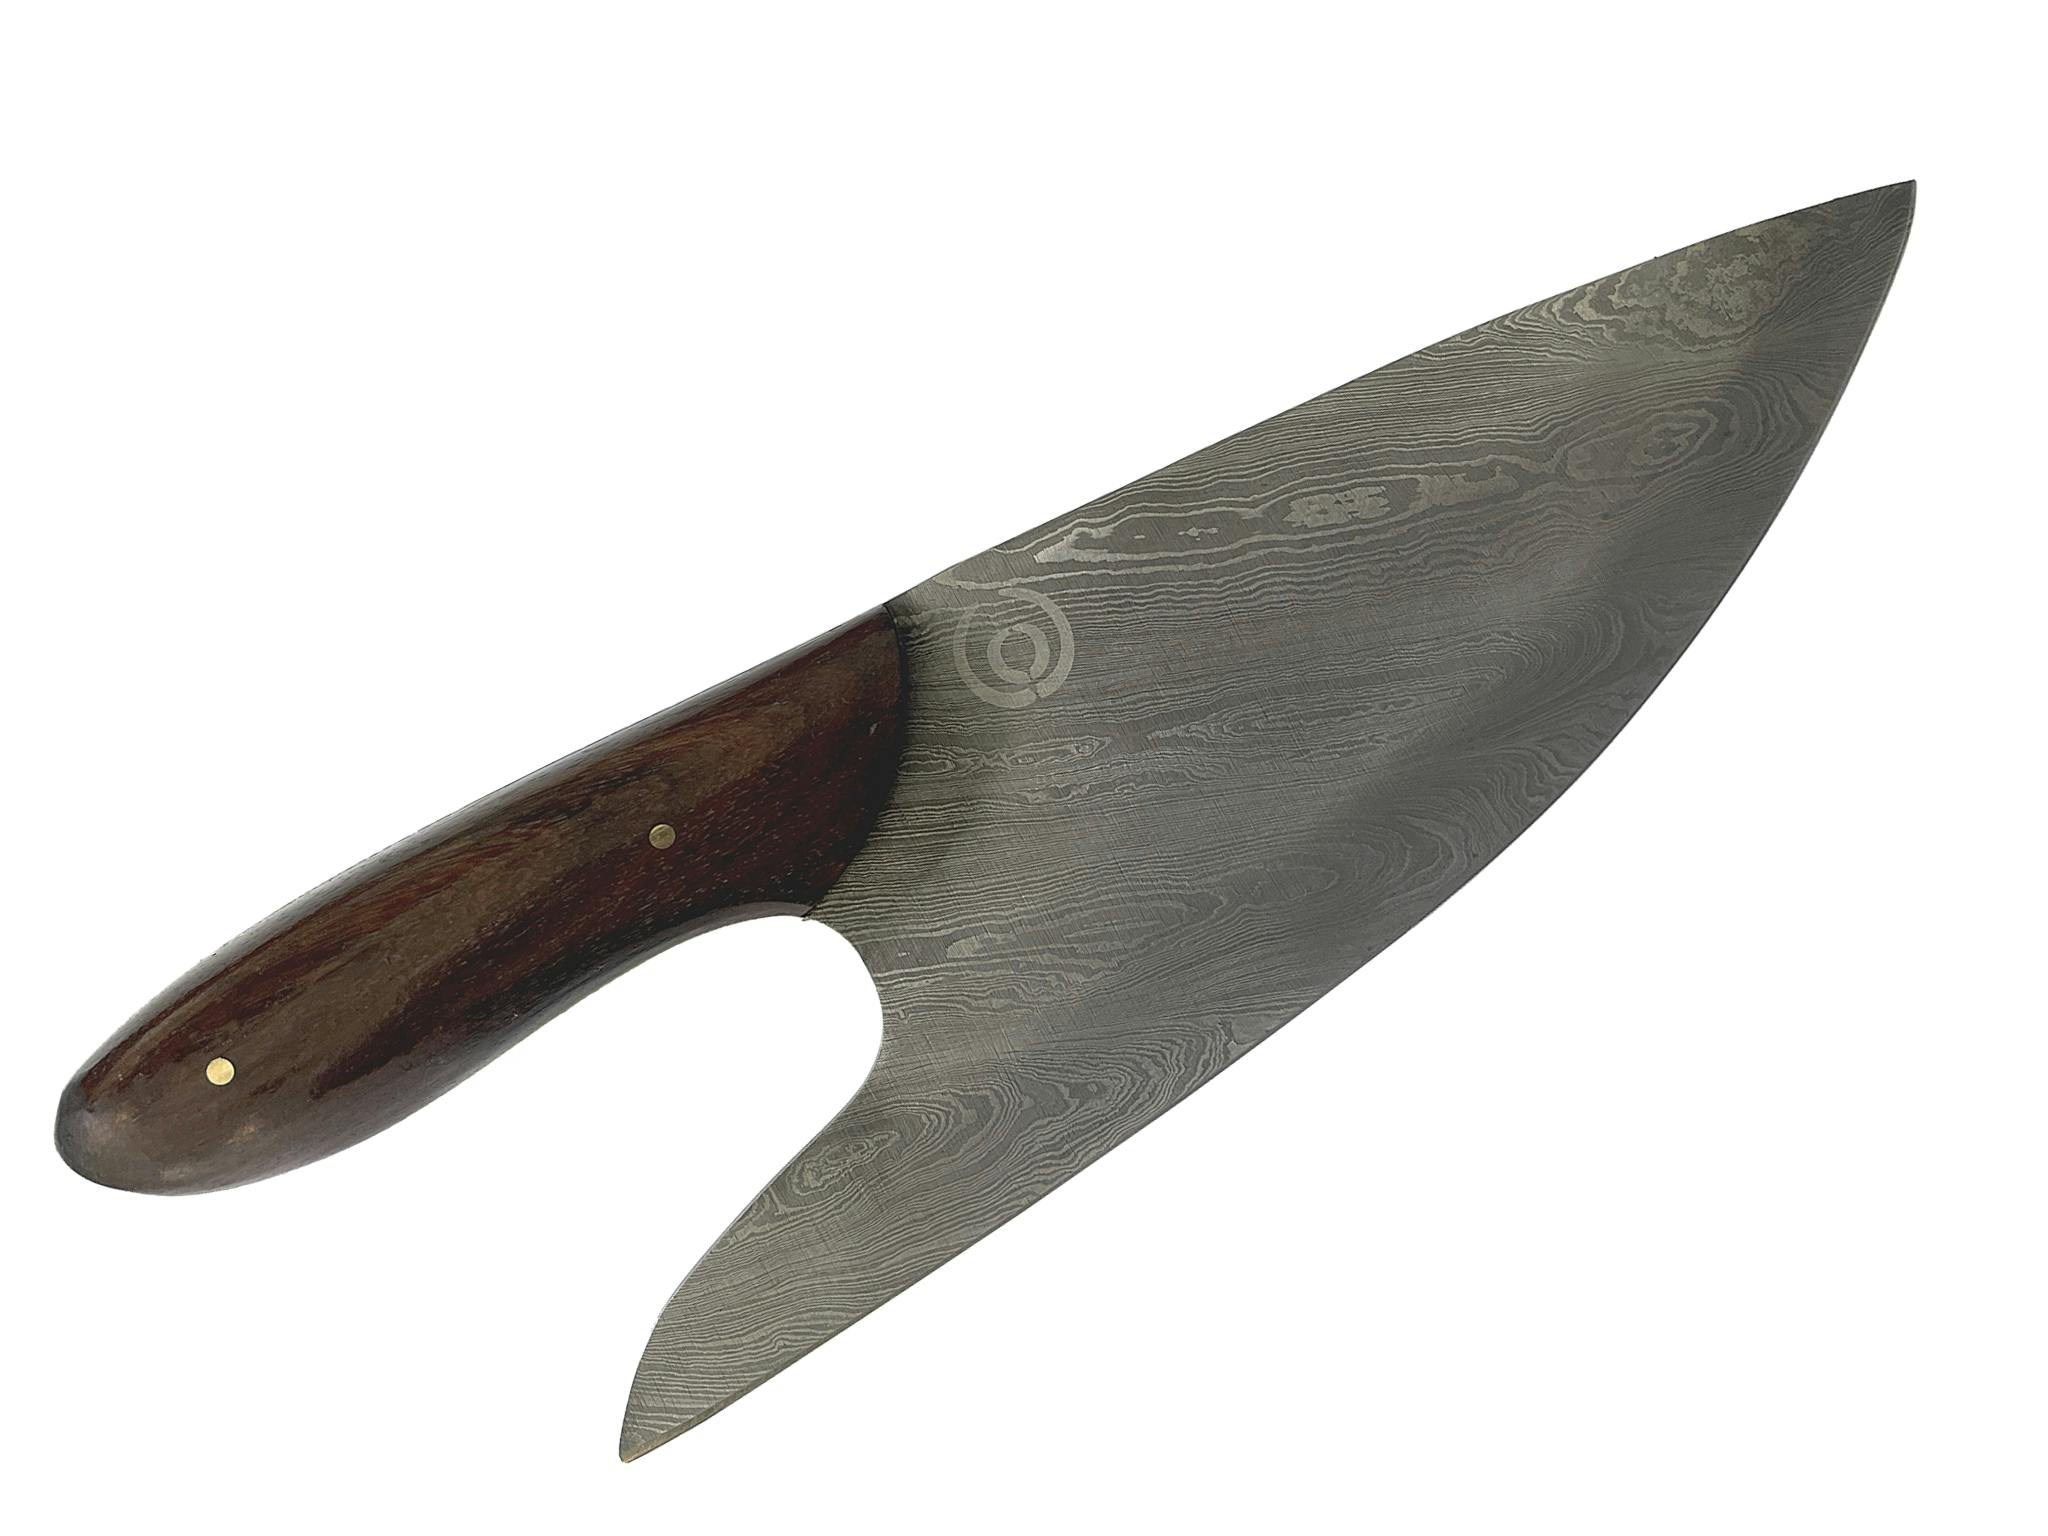 En unik design av kockkniv, handgjord i äkta damascusstål. Designad i Sverige